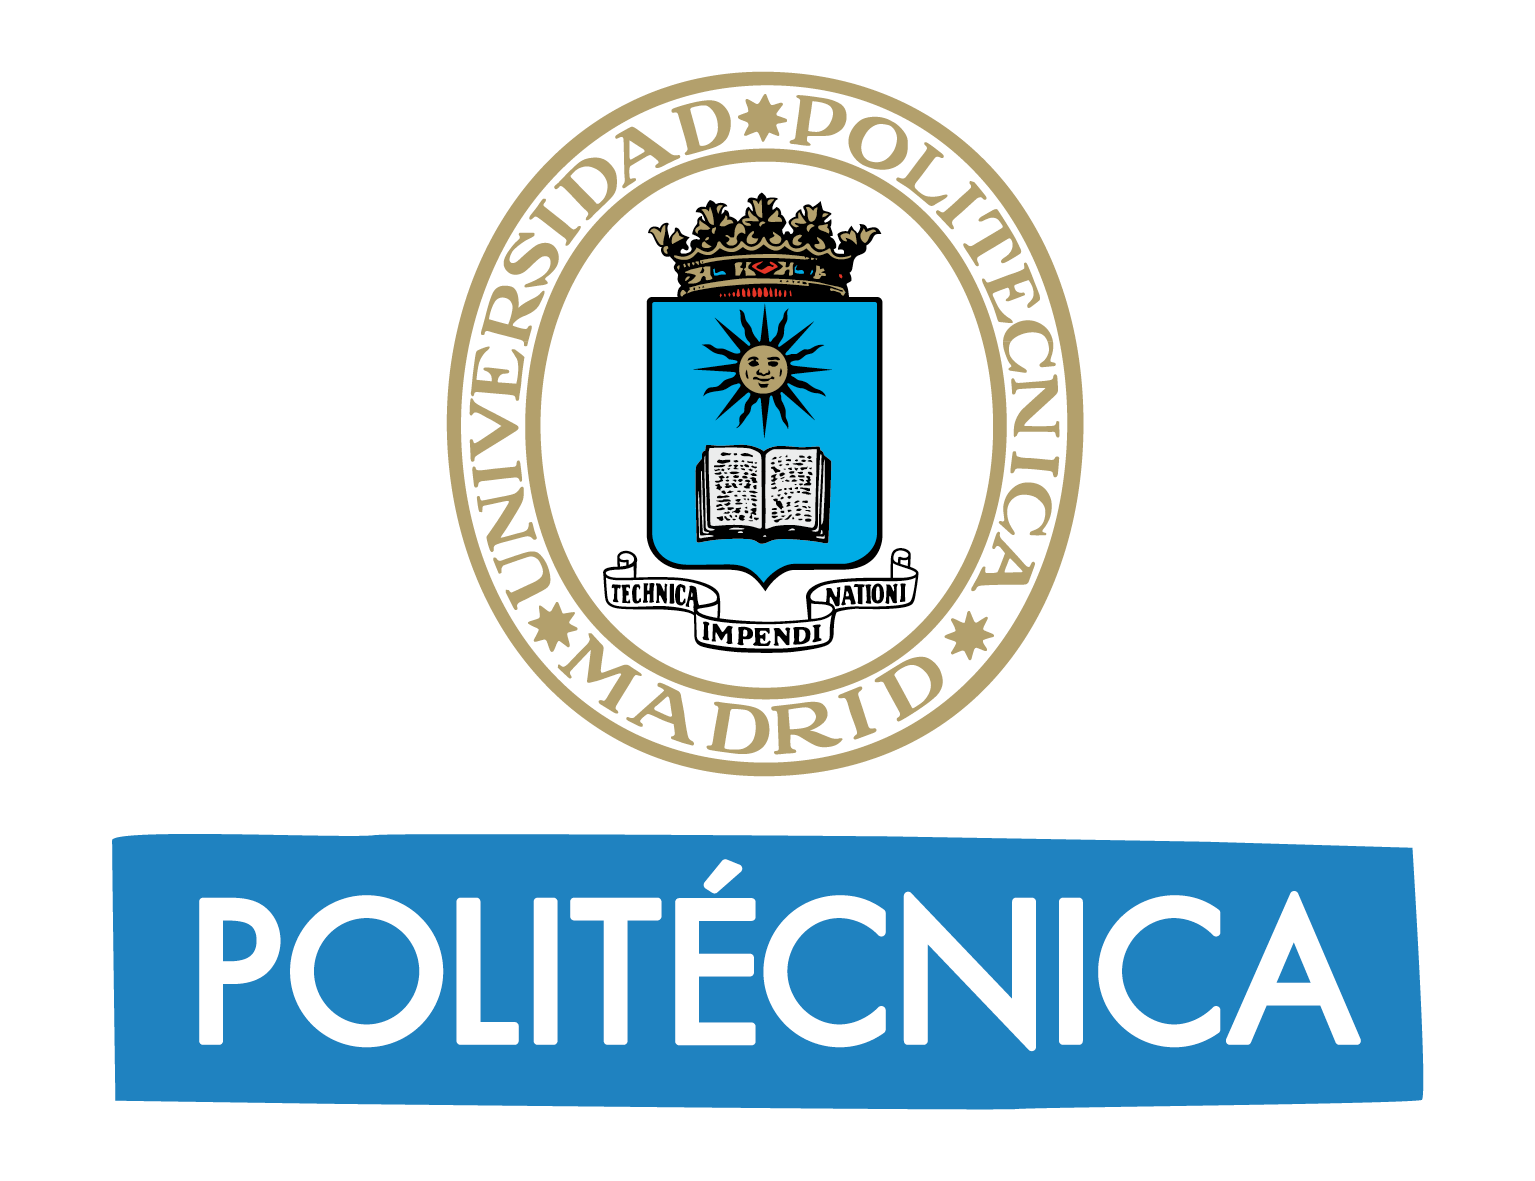 Resultado de imagen de politecnica madrid logo